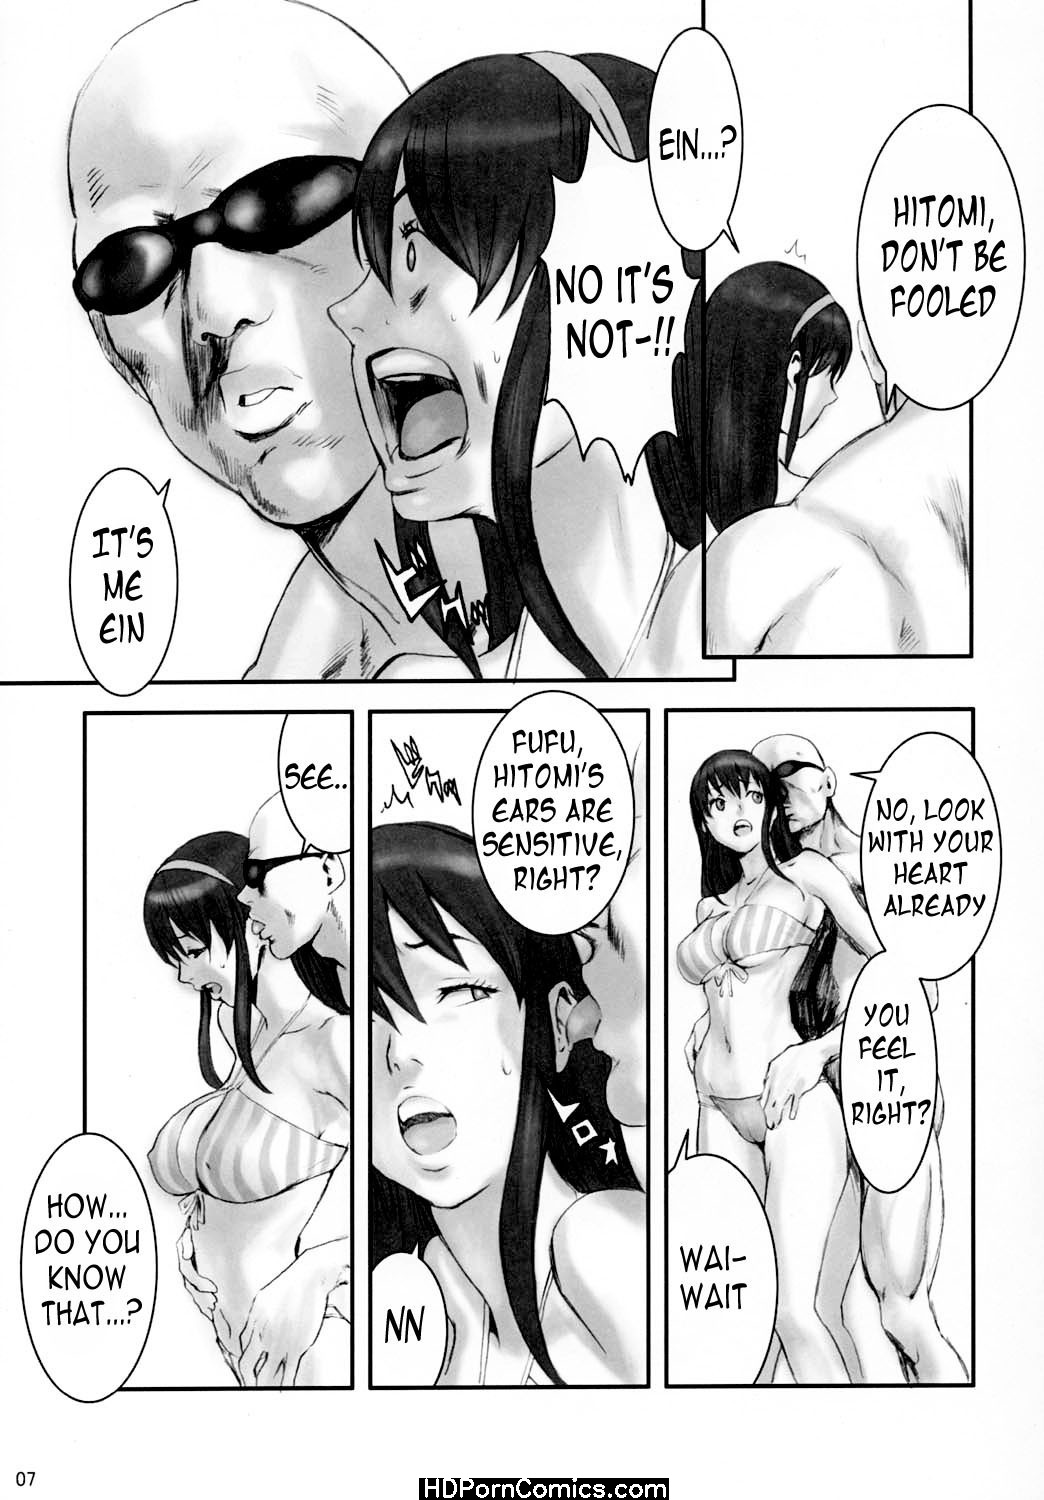 Manga sex comics